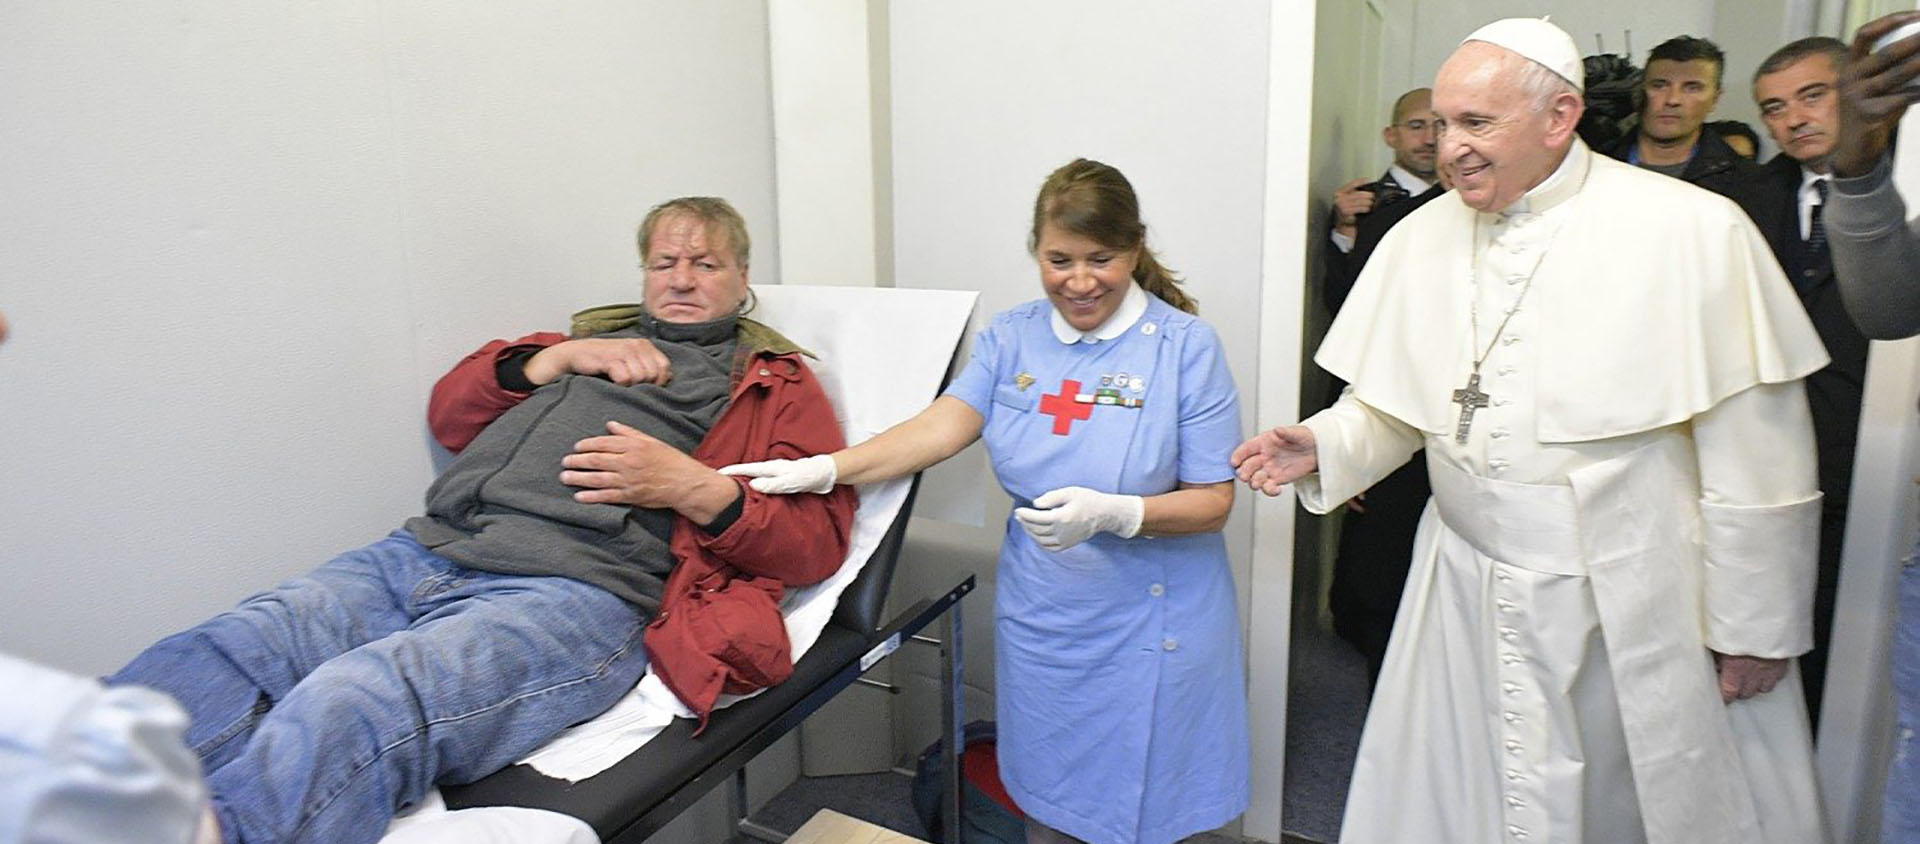 Le pape a rendu visite au personnel travaillant dans une clinique mobile, destinée à la prévention des maladies cardiovasculaires, ouverte aux plus démunis | © Vatican news